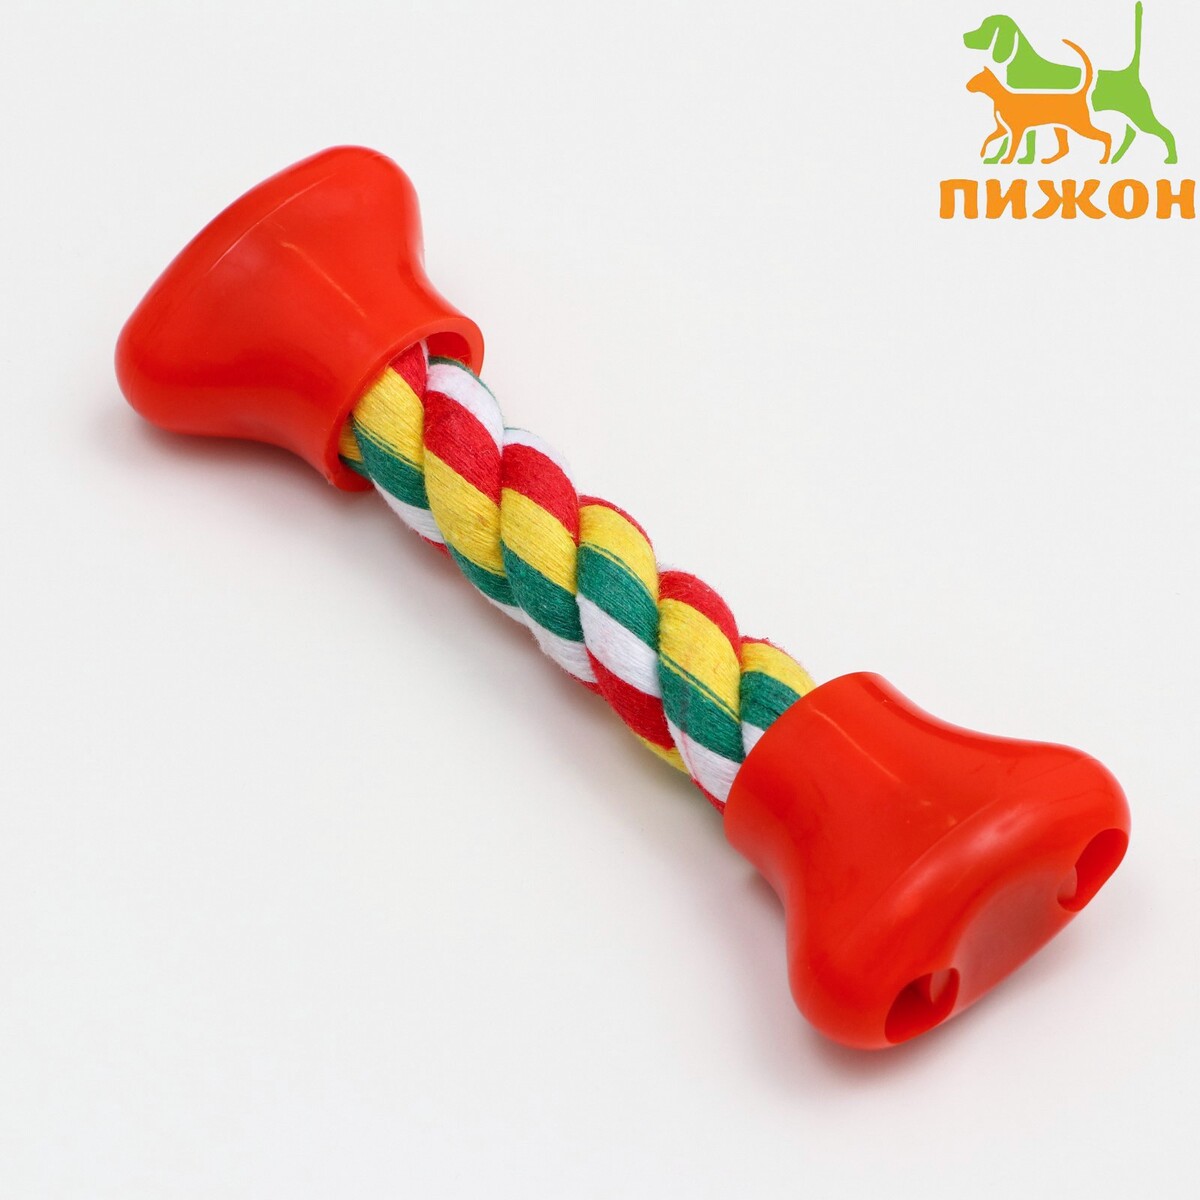 Игрушка канатная игрушка тренировочная канатная до 30 см 70 г белая зеленая красная